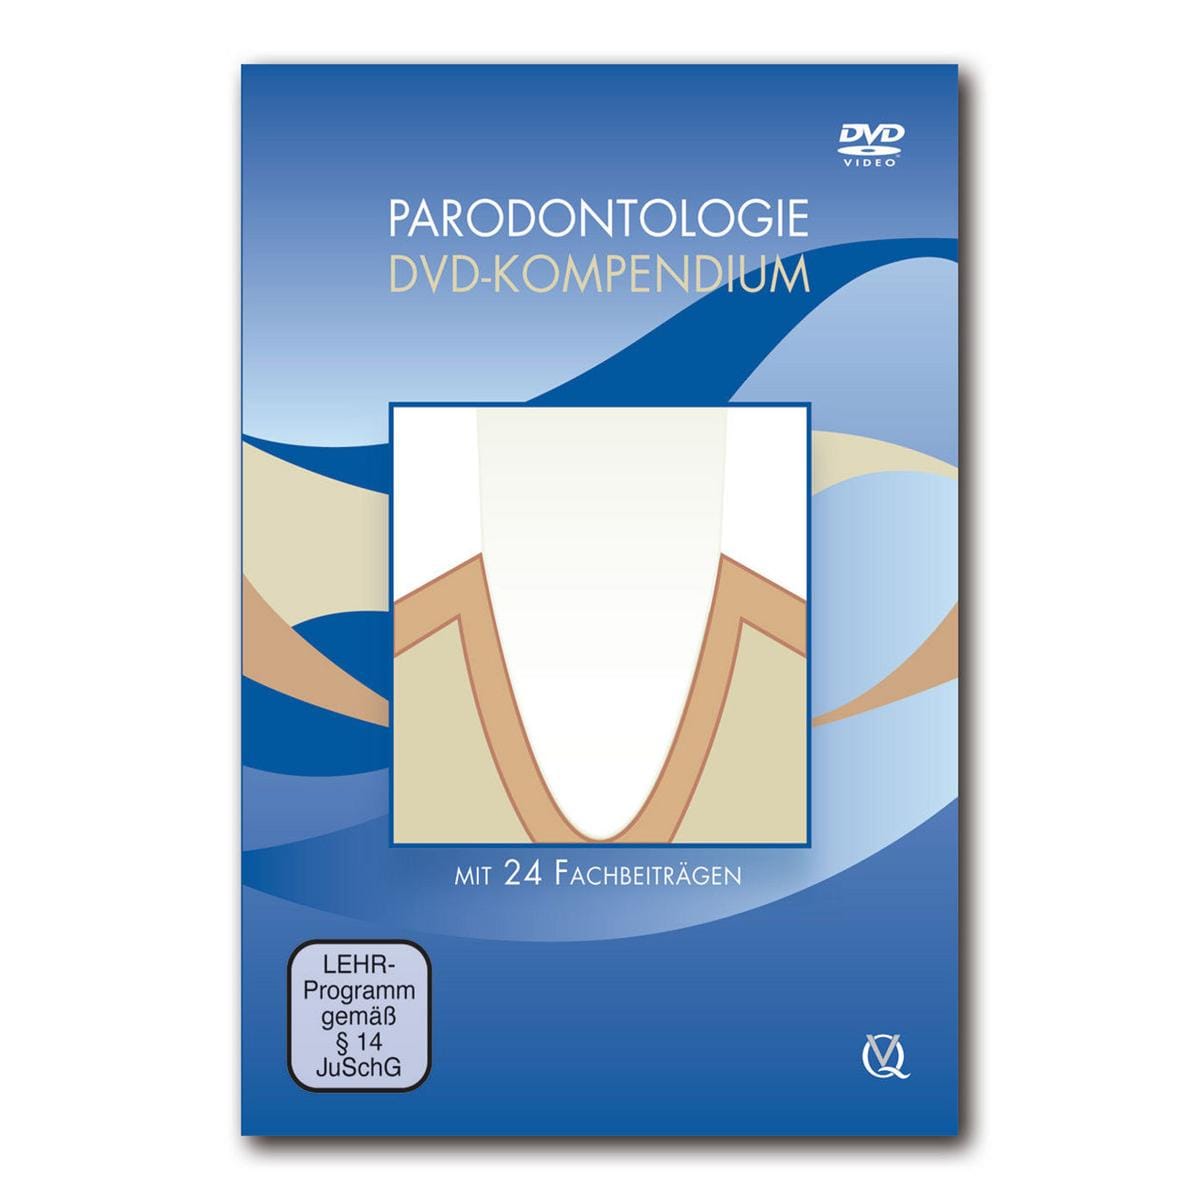 Parodontologie DVD-Kompendium - DVD-Box mit insgesamt 24 Fachbeiträgen